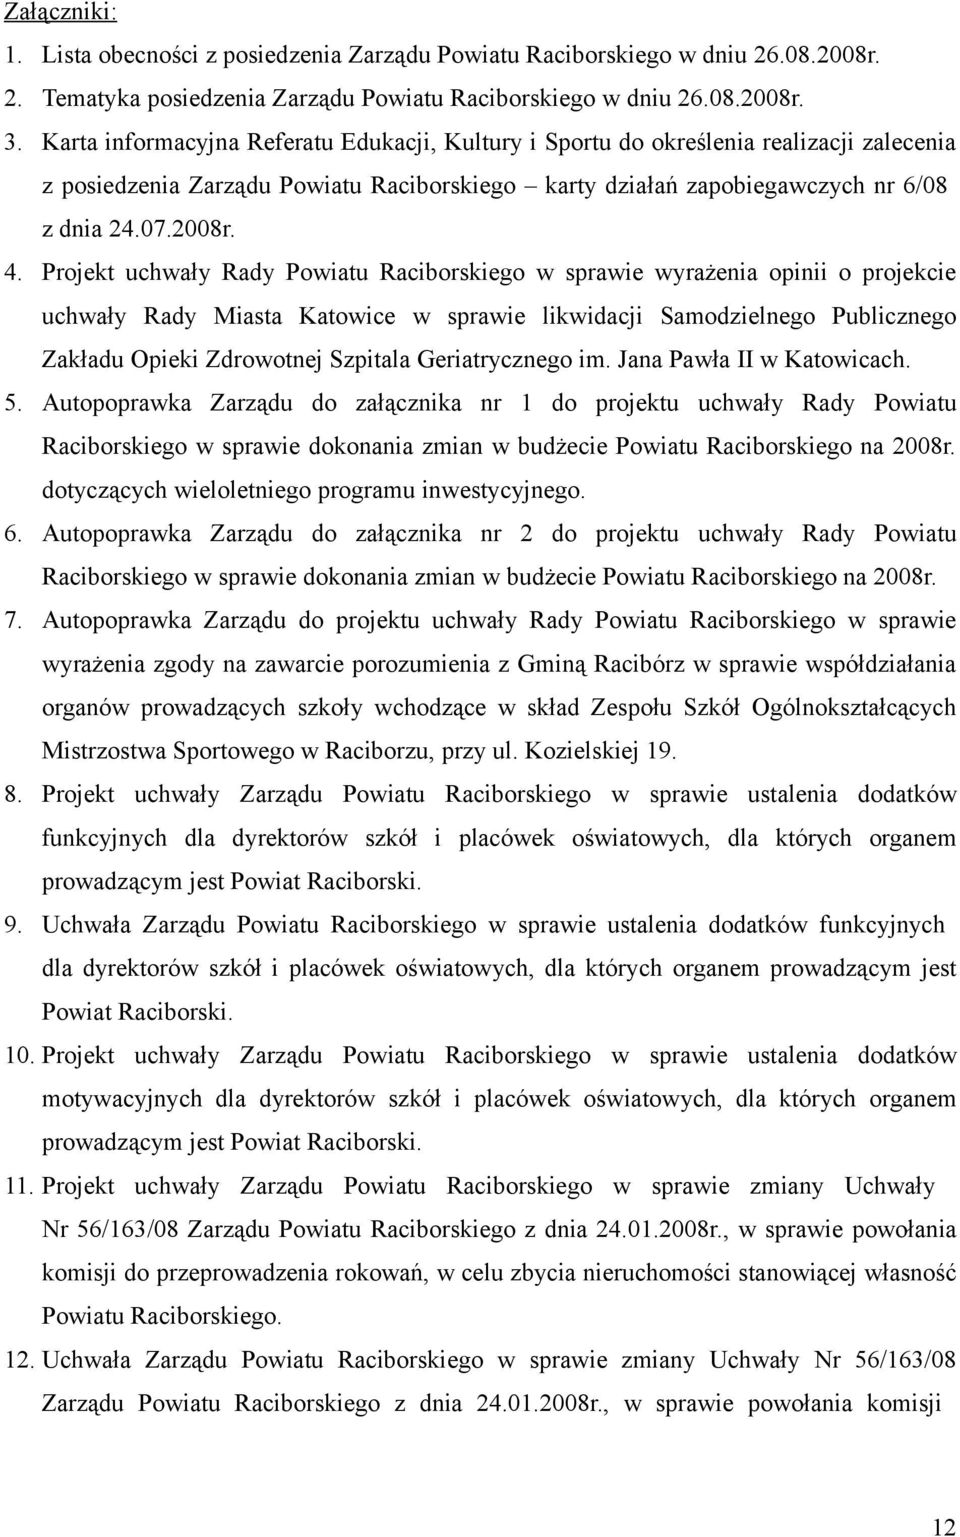 Projekt uchwały Rady Powiatu Raciborskiego w sprawie wyrażenia opinii o projekcie uchwały Rady Miasta Katowice w sprawie likwidacji Samodzielnego Publicznego Zakładu Opieki Zdrowotnej Szpitala